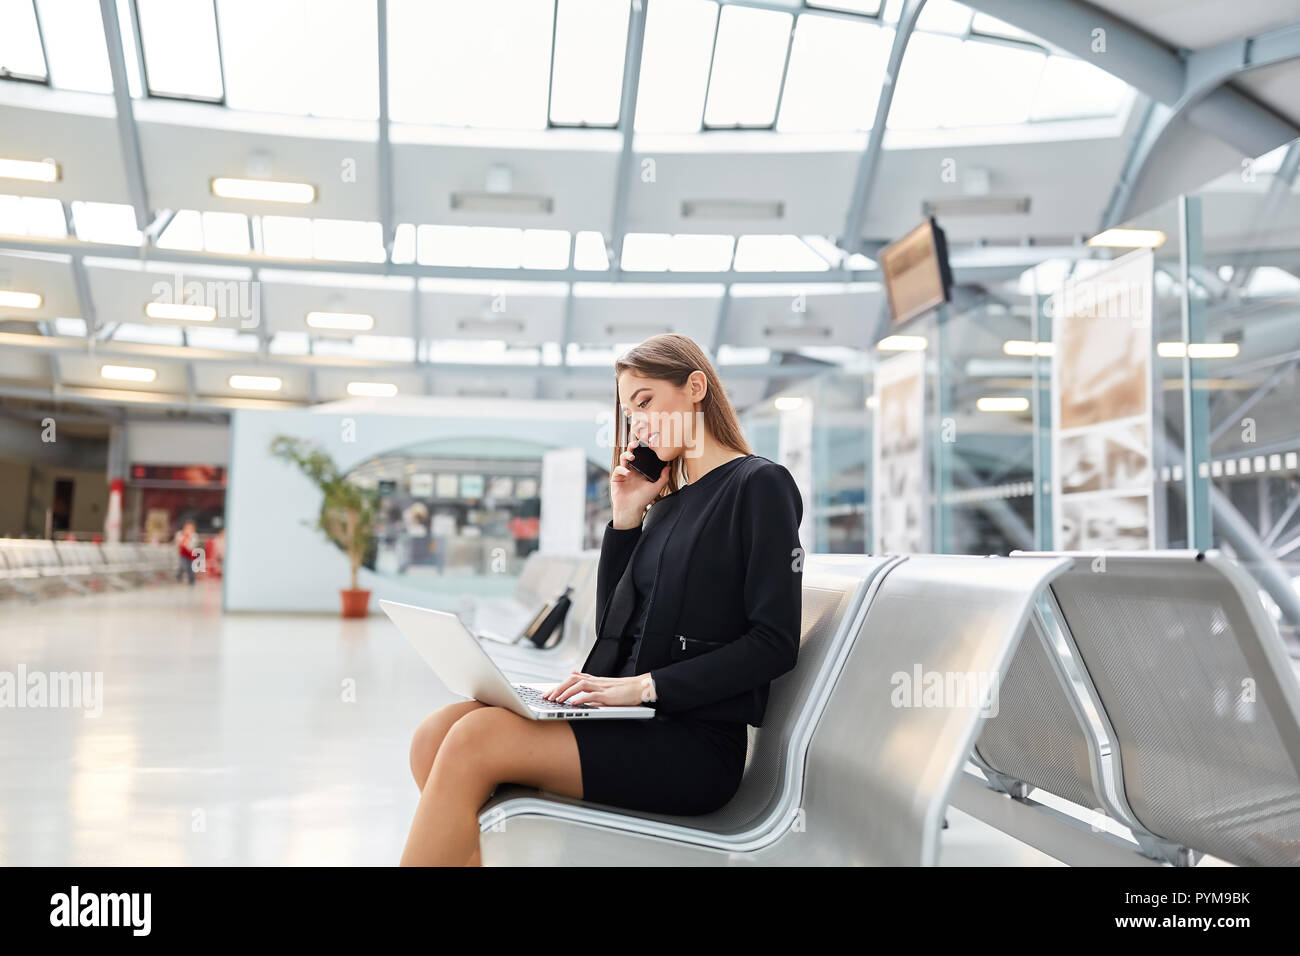 Young businesswoman is phoning avec smartphone en terminal de l'aéroport avant un voyage d'affaires Banque D'Images